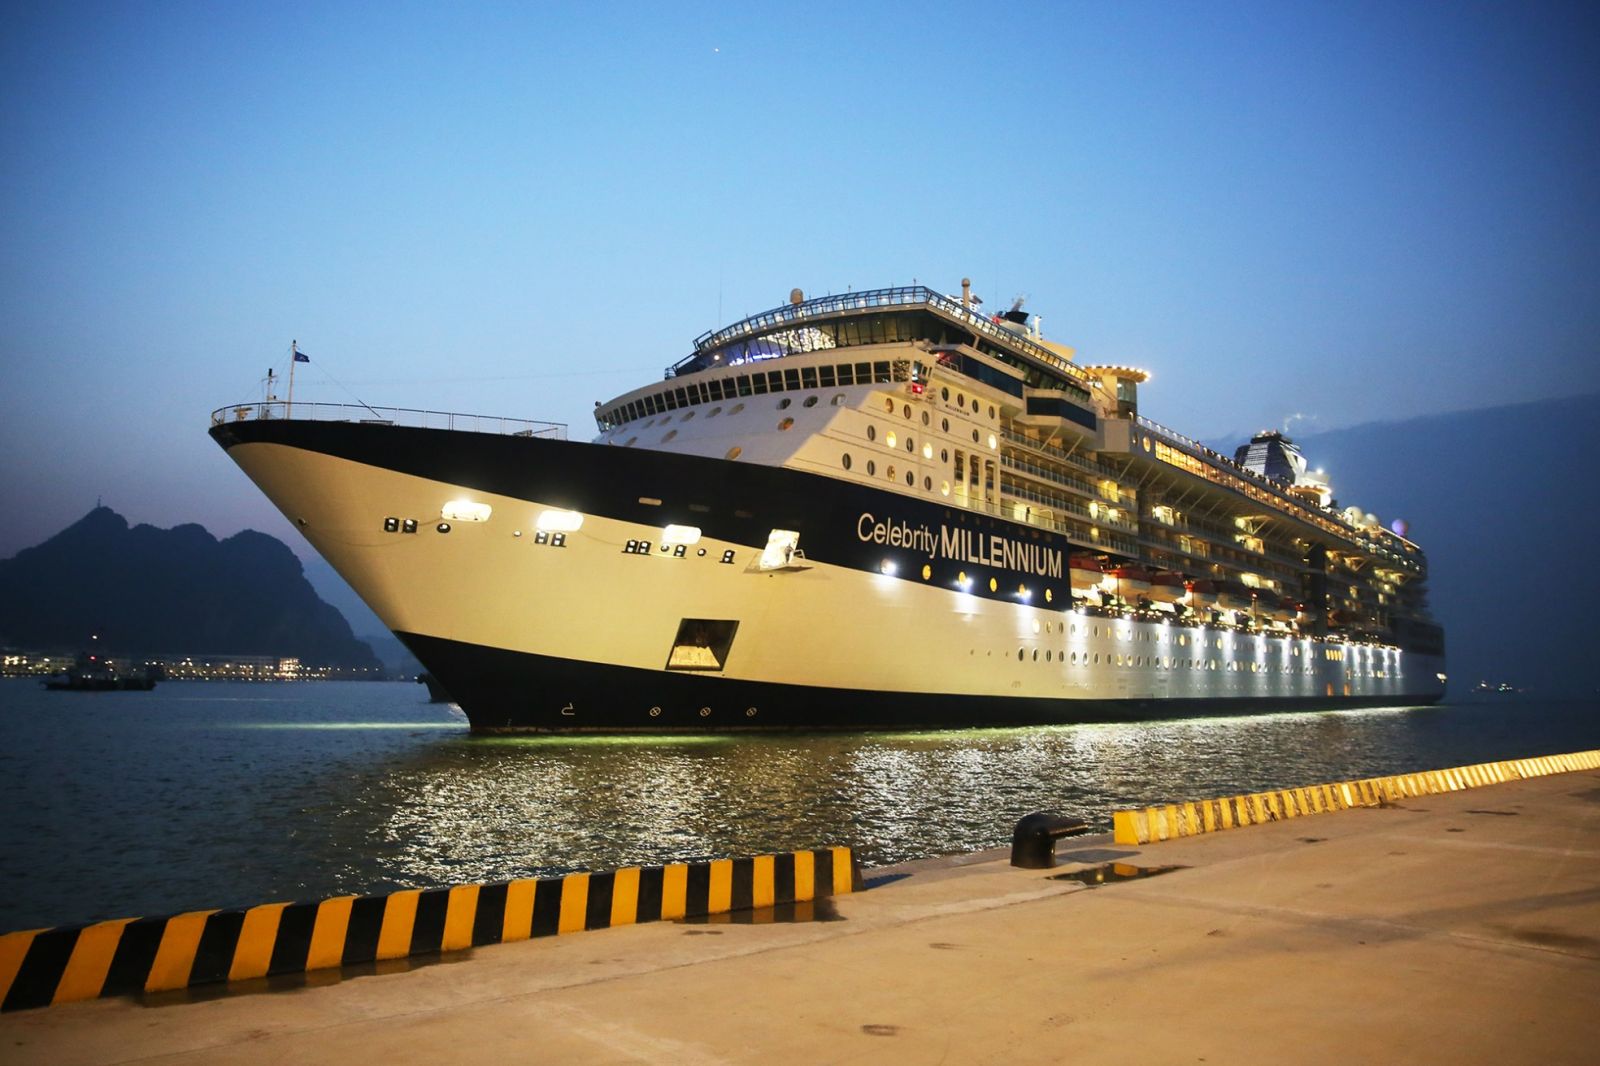 Tàu Celebrity Millennium cập Cảng tàu khách quốc tế Hạ Long.